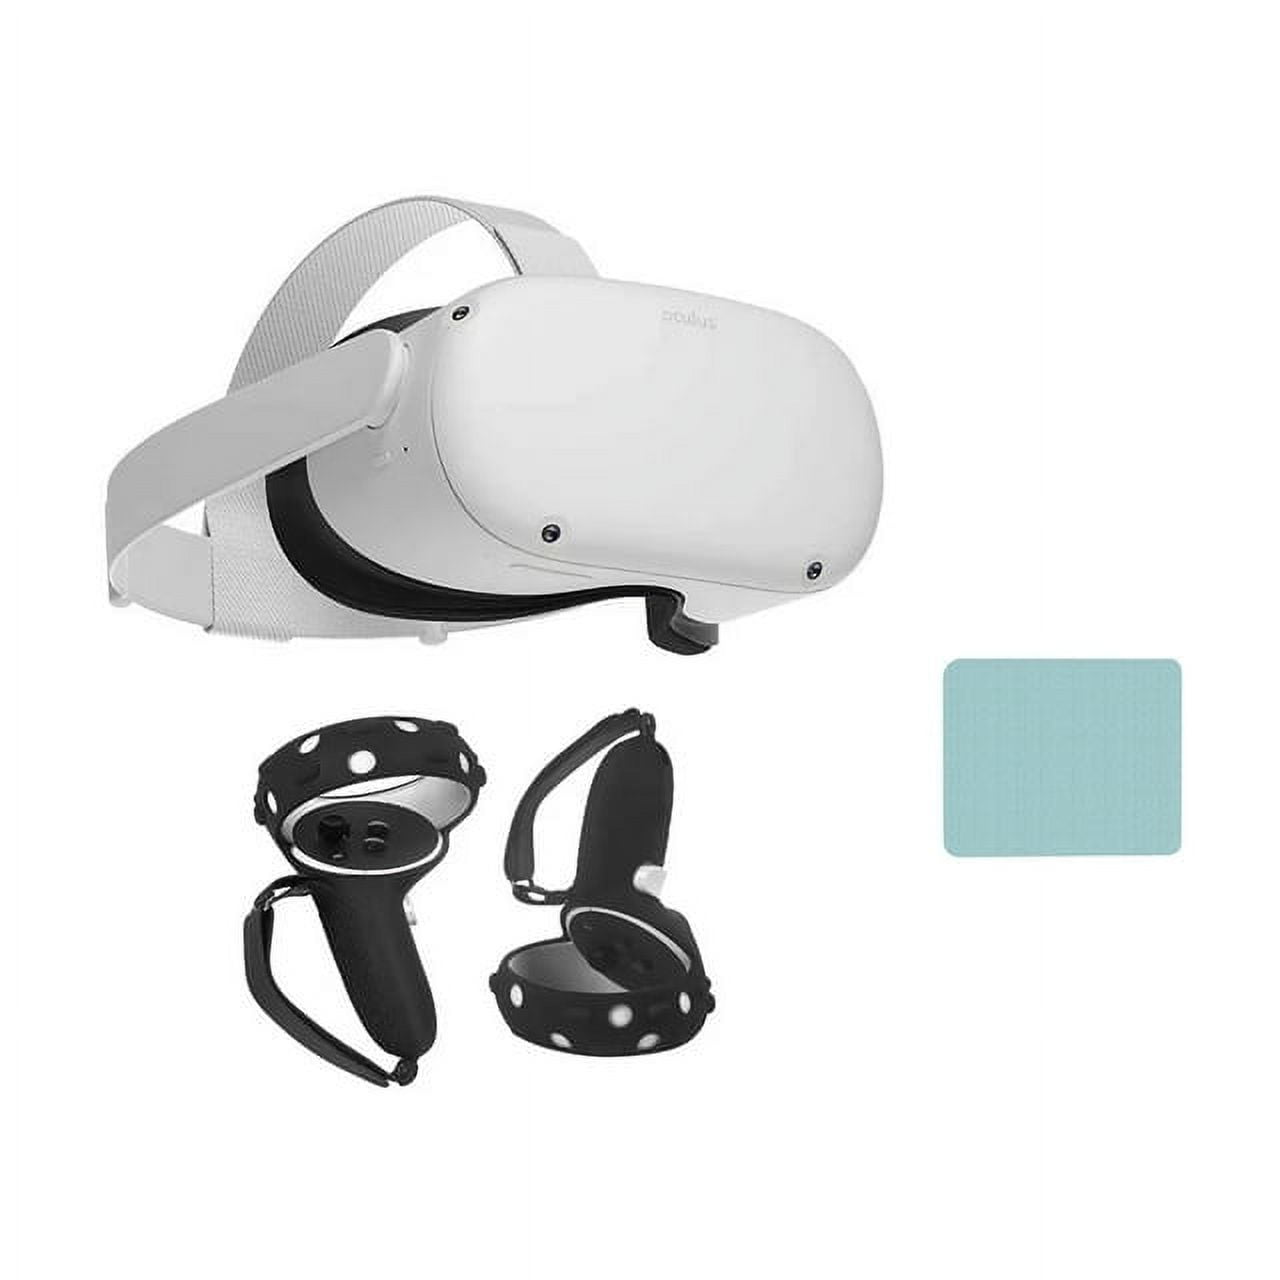 Rent Sony PSVR Headset Starter Pack (VR Glasses / PS Camera / PS